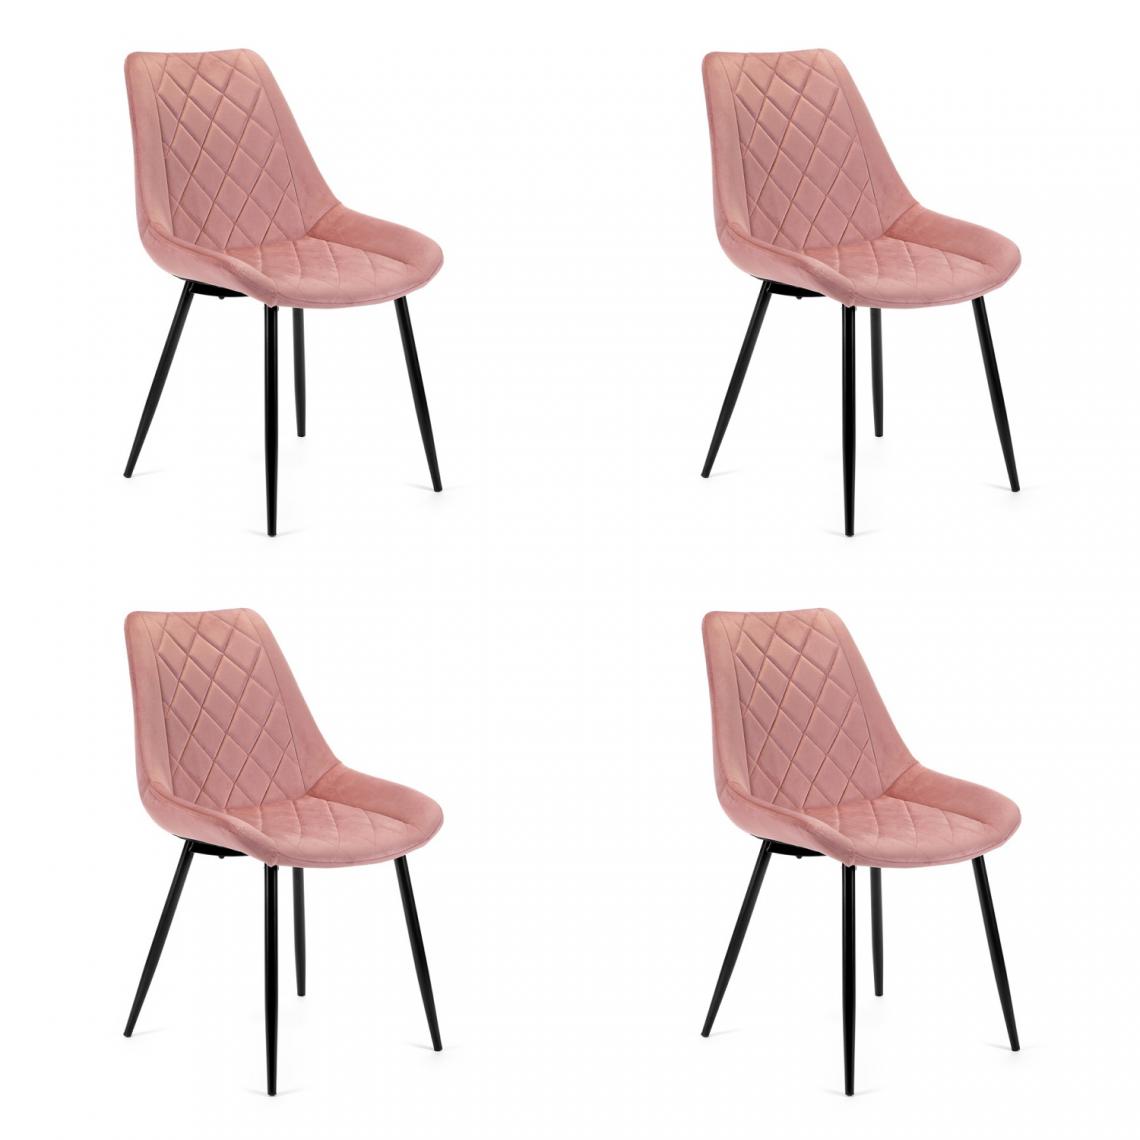 Hucoco - TERLO - Chaise rembourrée 4 pcs style moderne salon/salle à manger - 84x44x43 - Pieds en métal - Rose - Chaises